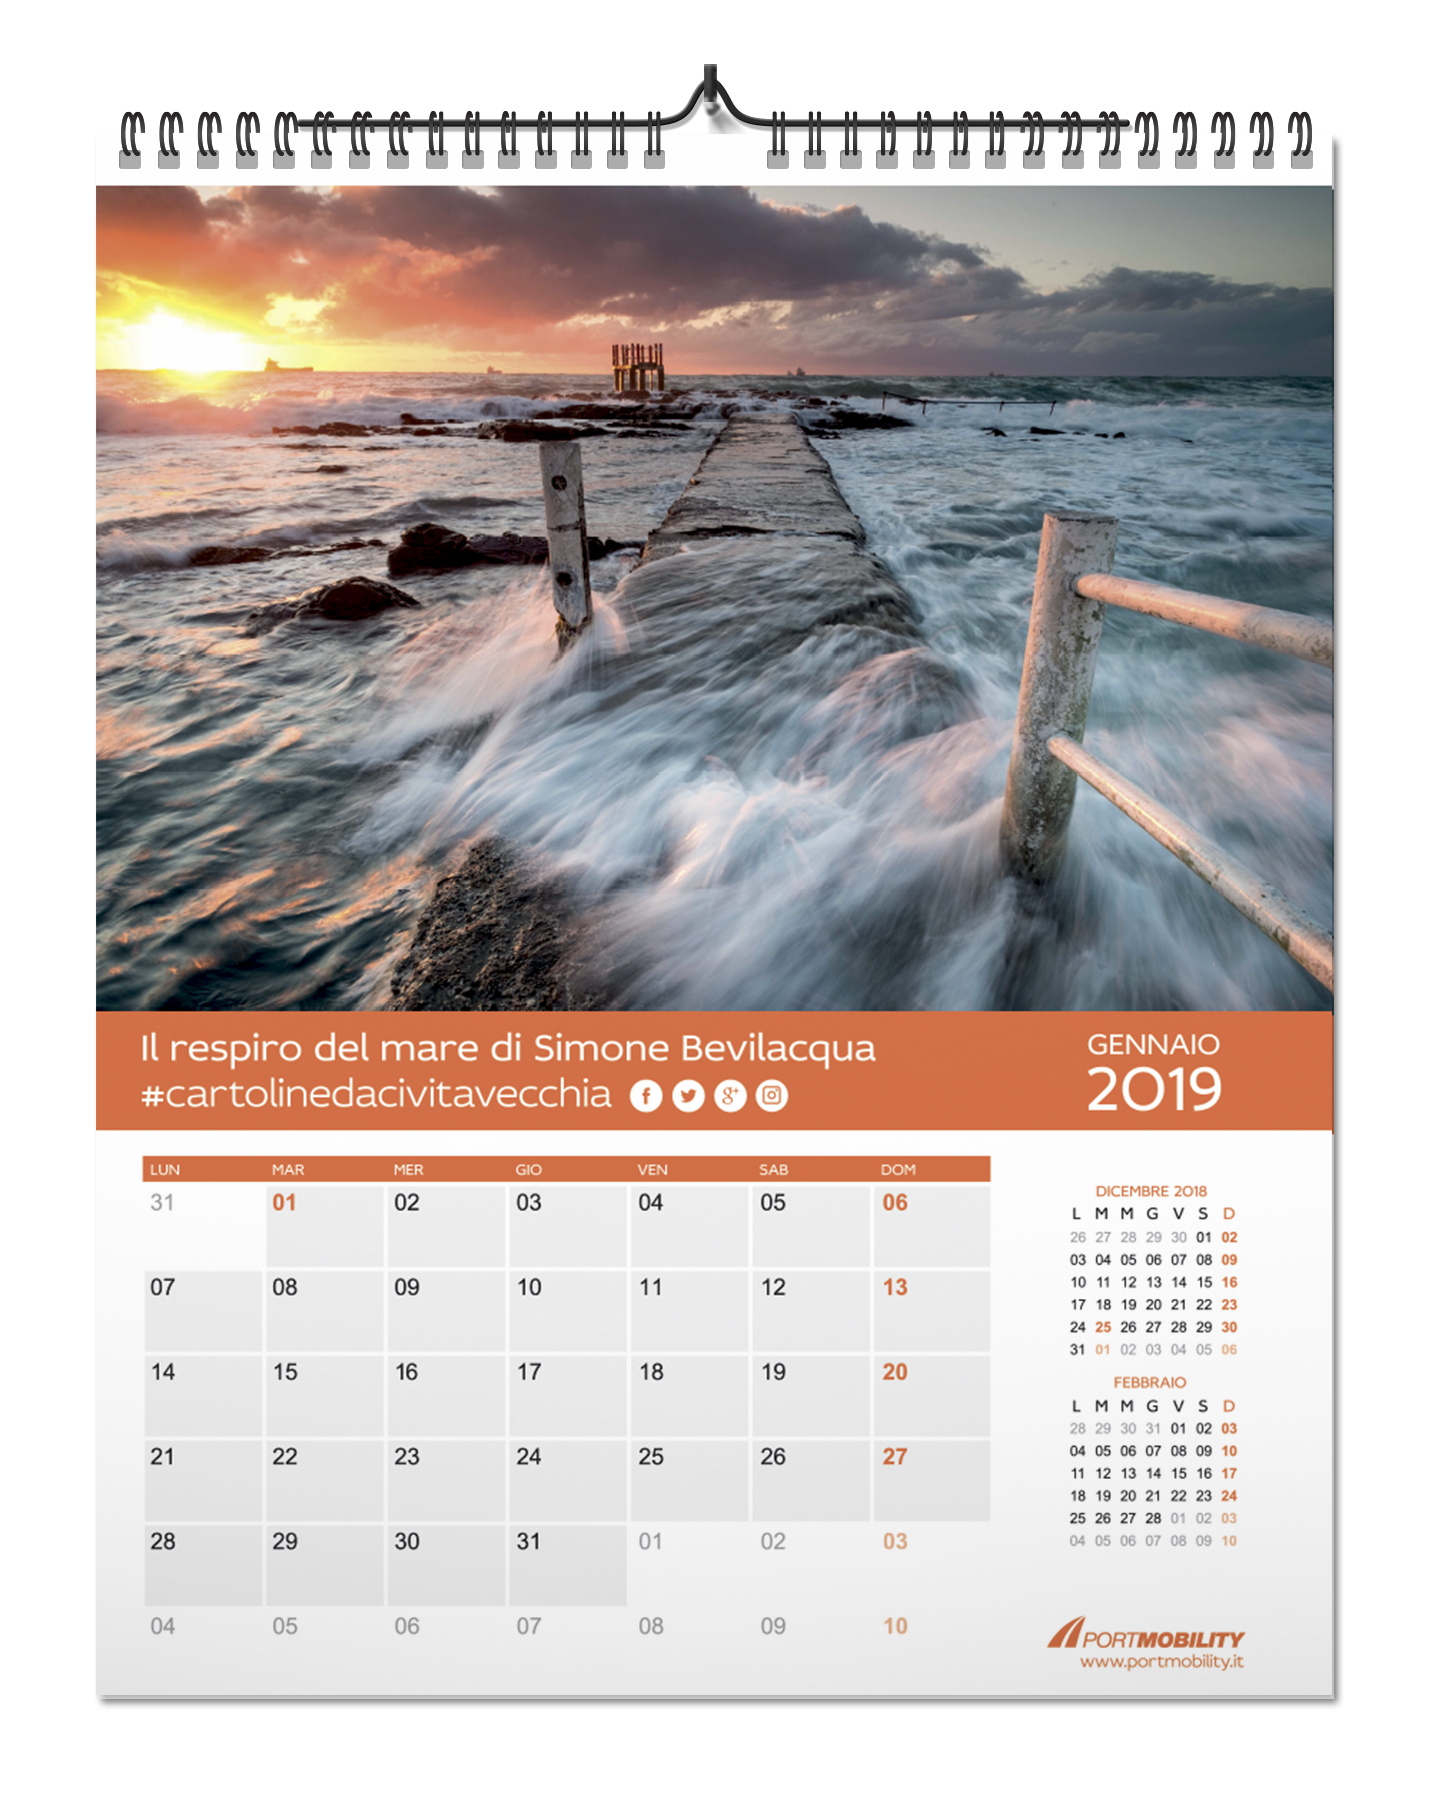 Cartoline da Civitavecchia 2019: il mese di gennaio